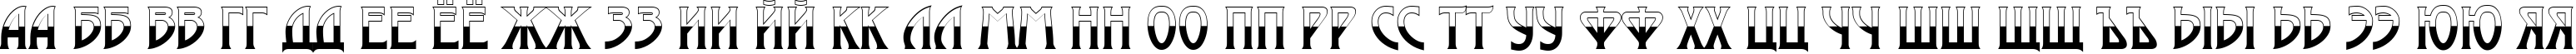 Пример написания русского алфавита шрифтом a_ModernoB&W